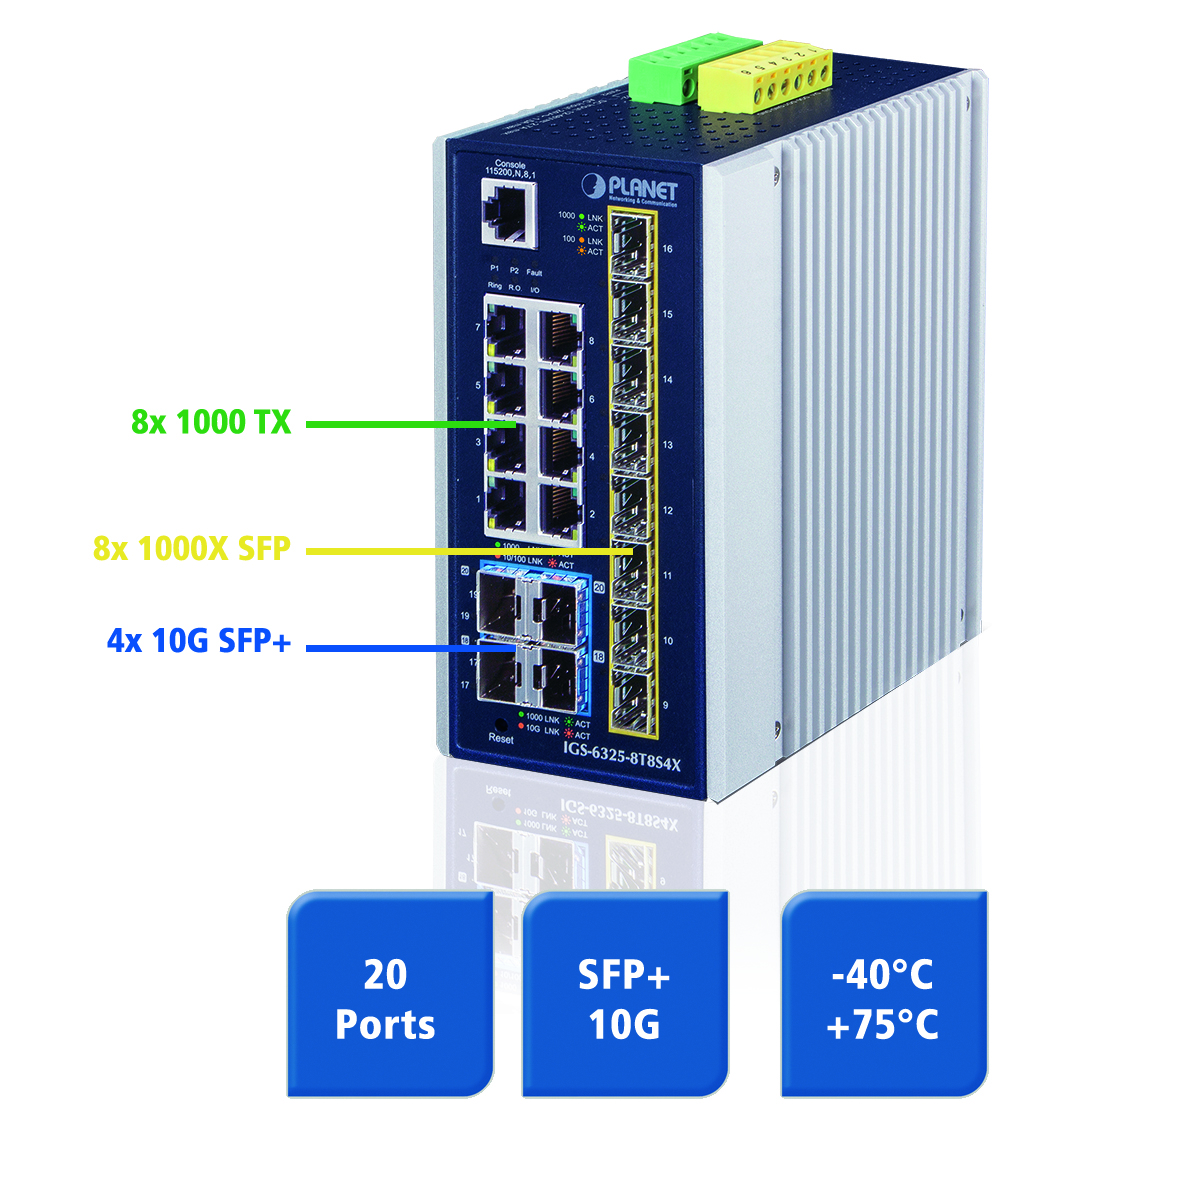 Administrierbarer High-speed Ethernet Switch auf der DIN-Schiene